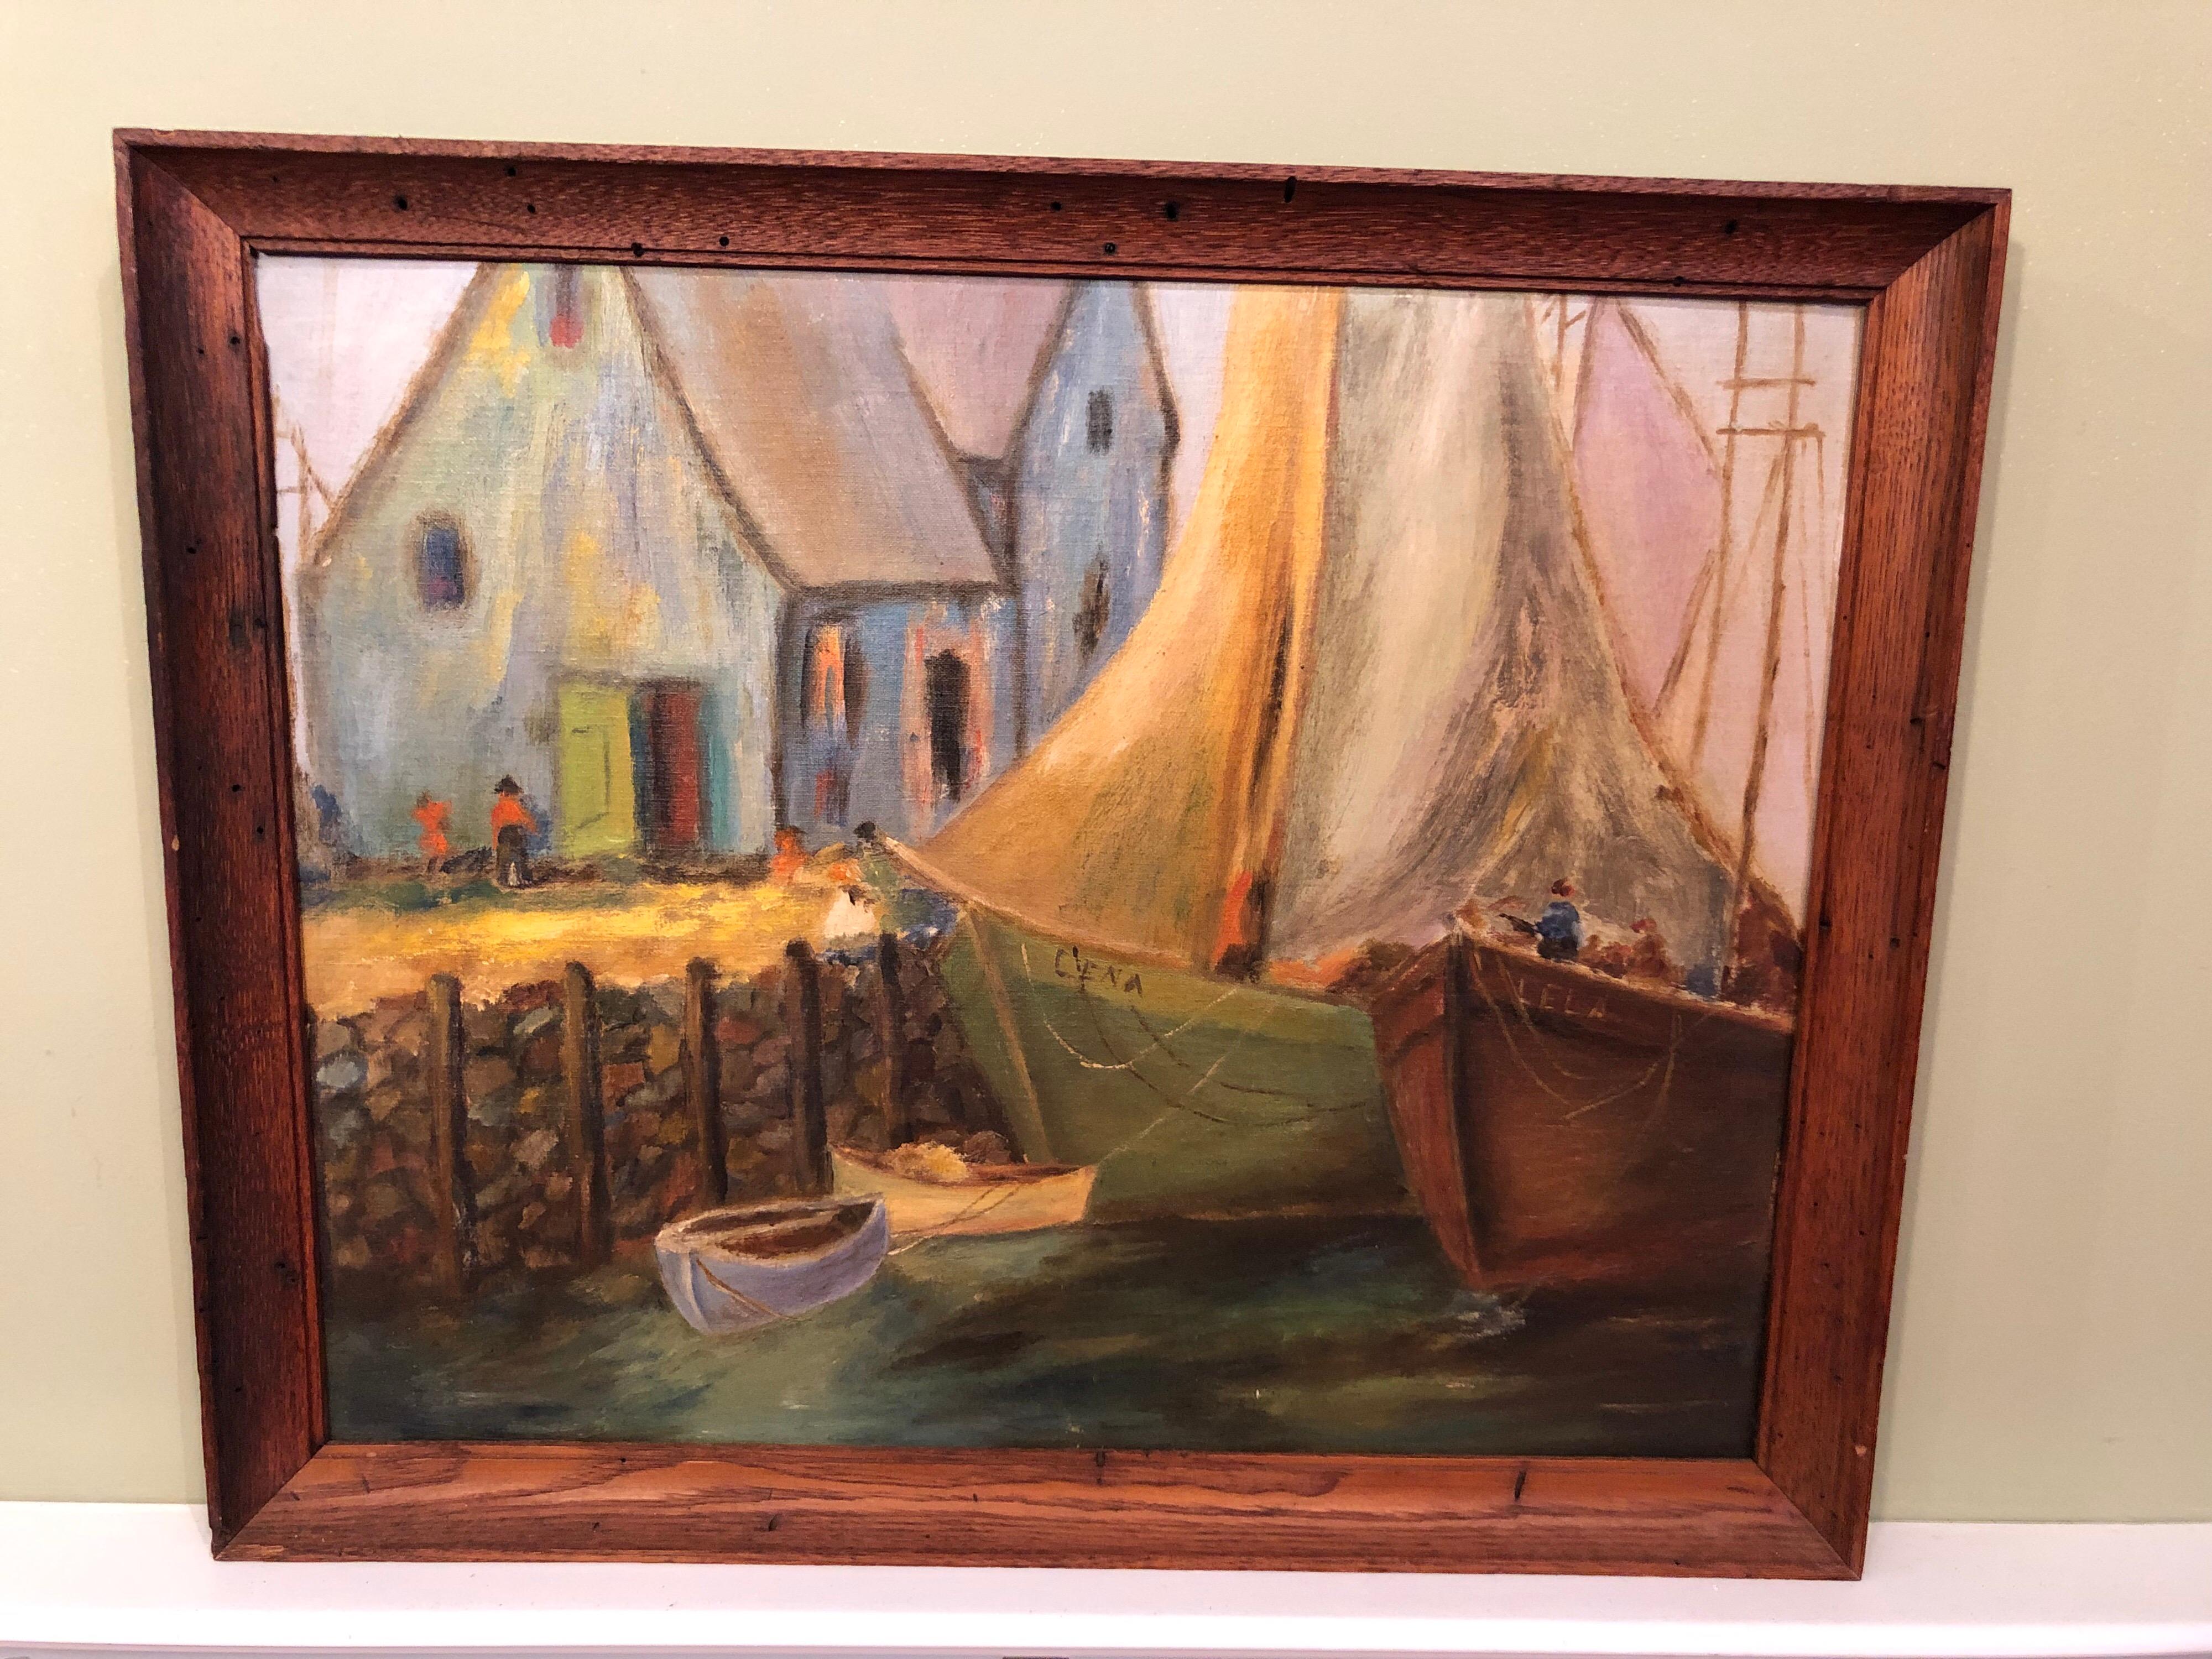 0il coloré à bord de bateaux dans un port. Jolie peinture du milieu du siècle avec une palette de tons de terre et une technique d'empâtement légère. Le tout est présenté dans un cadre en bois solide.